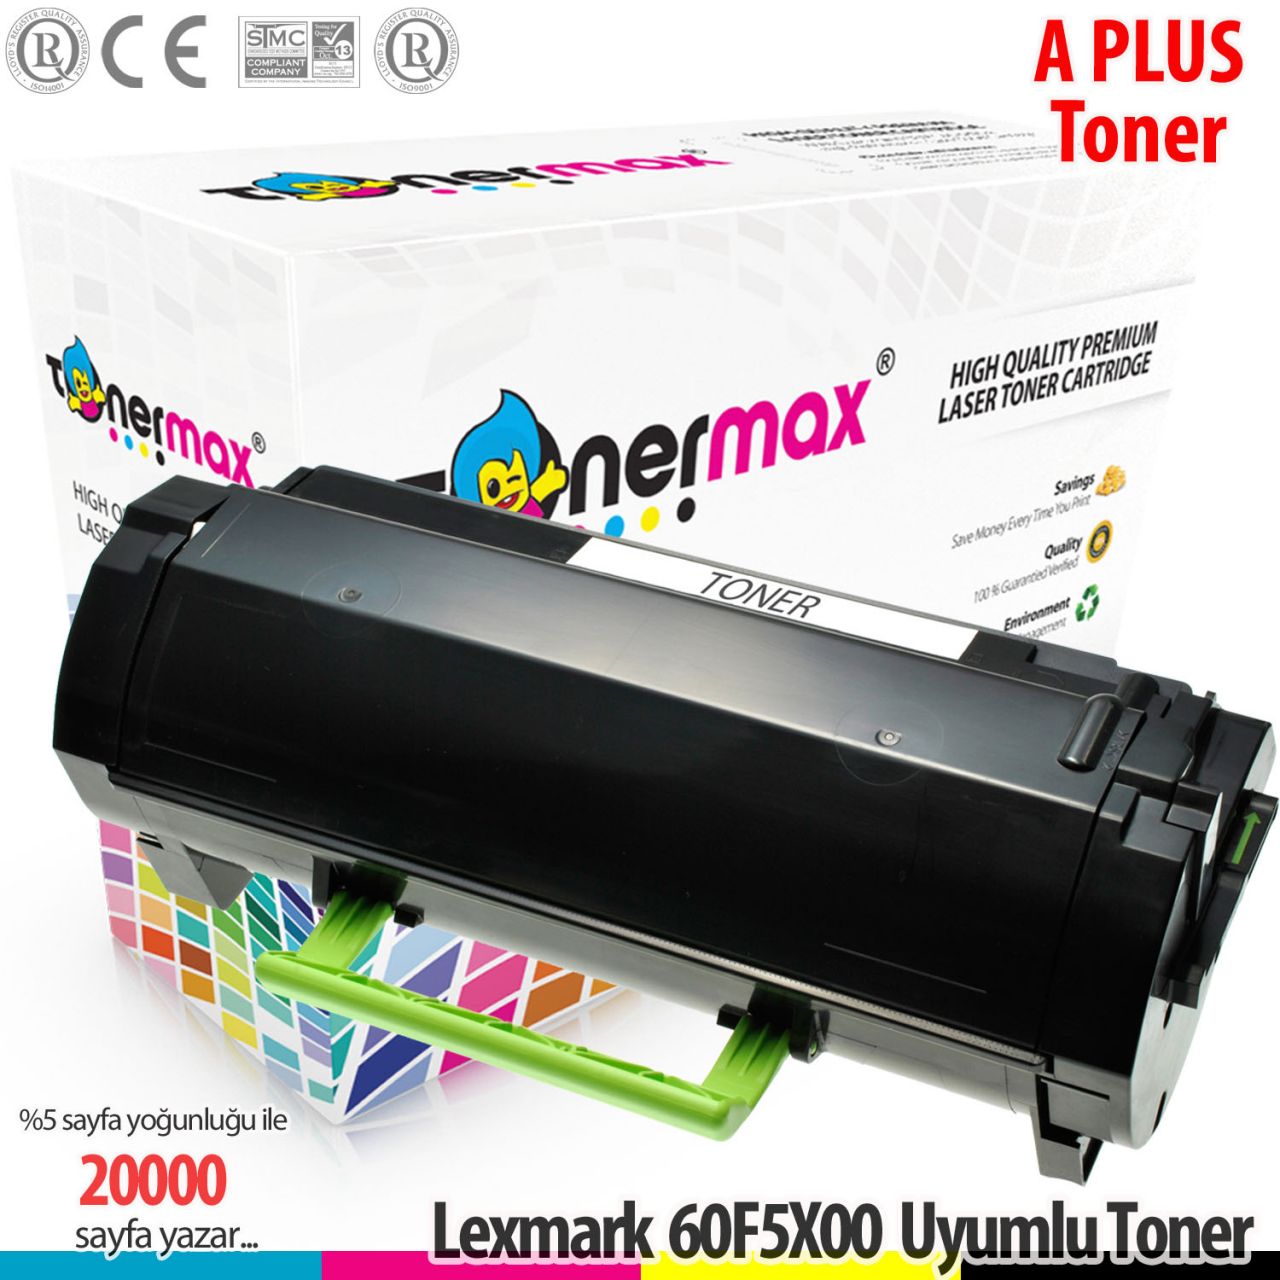 Lexmark 605X / 60F5X00 / MX510 / MX511 / MX611 A Plus Muadil Toneri 20K